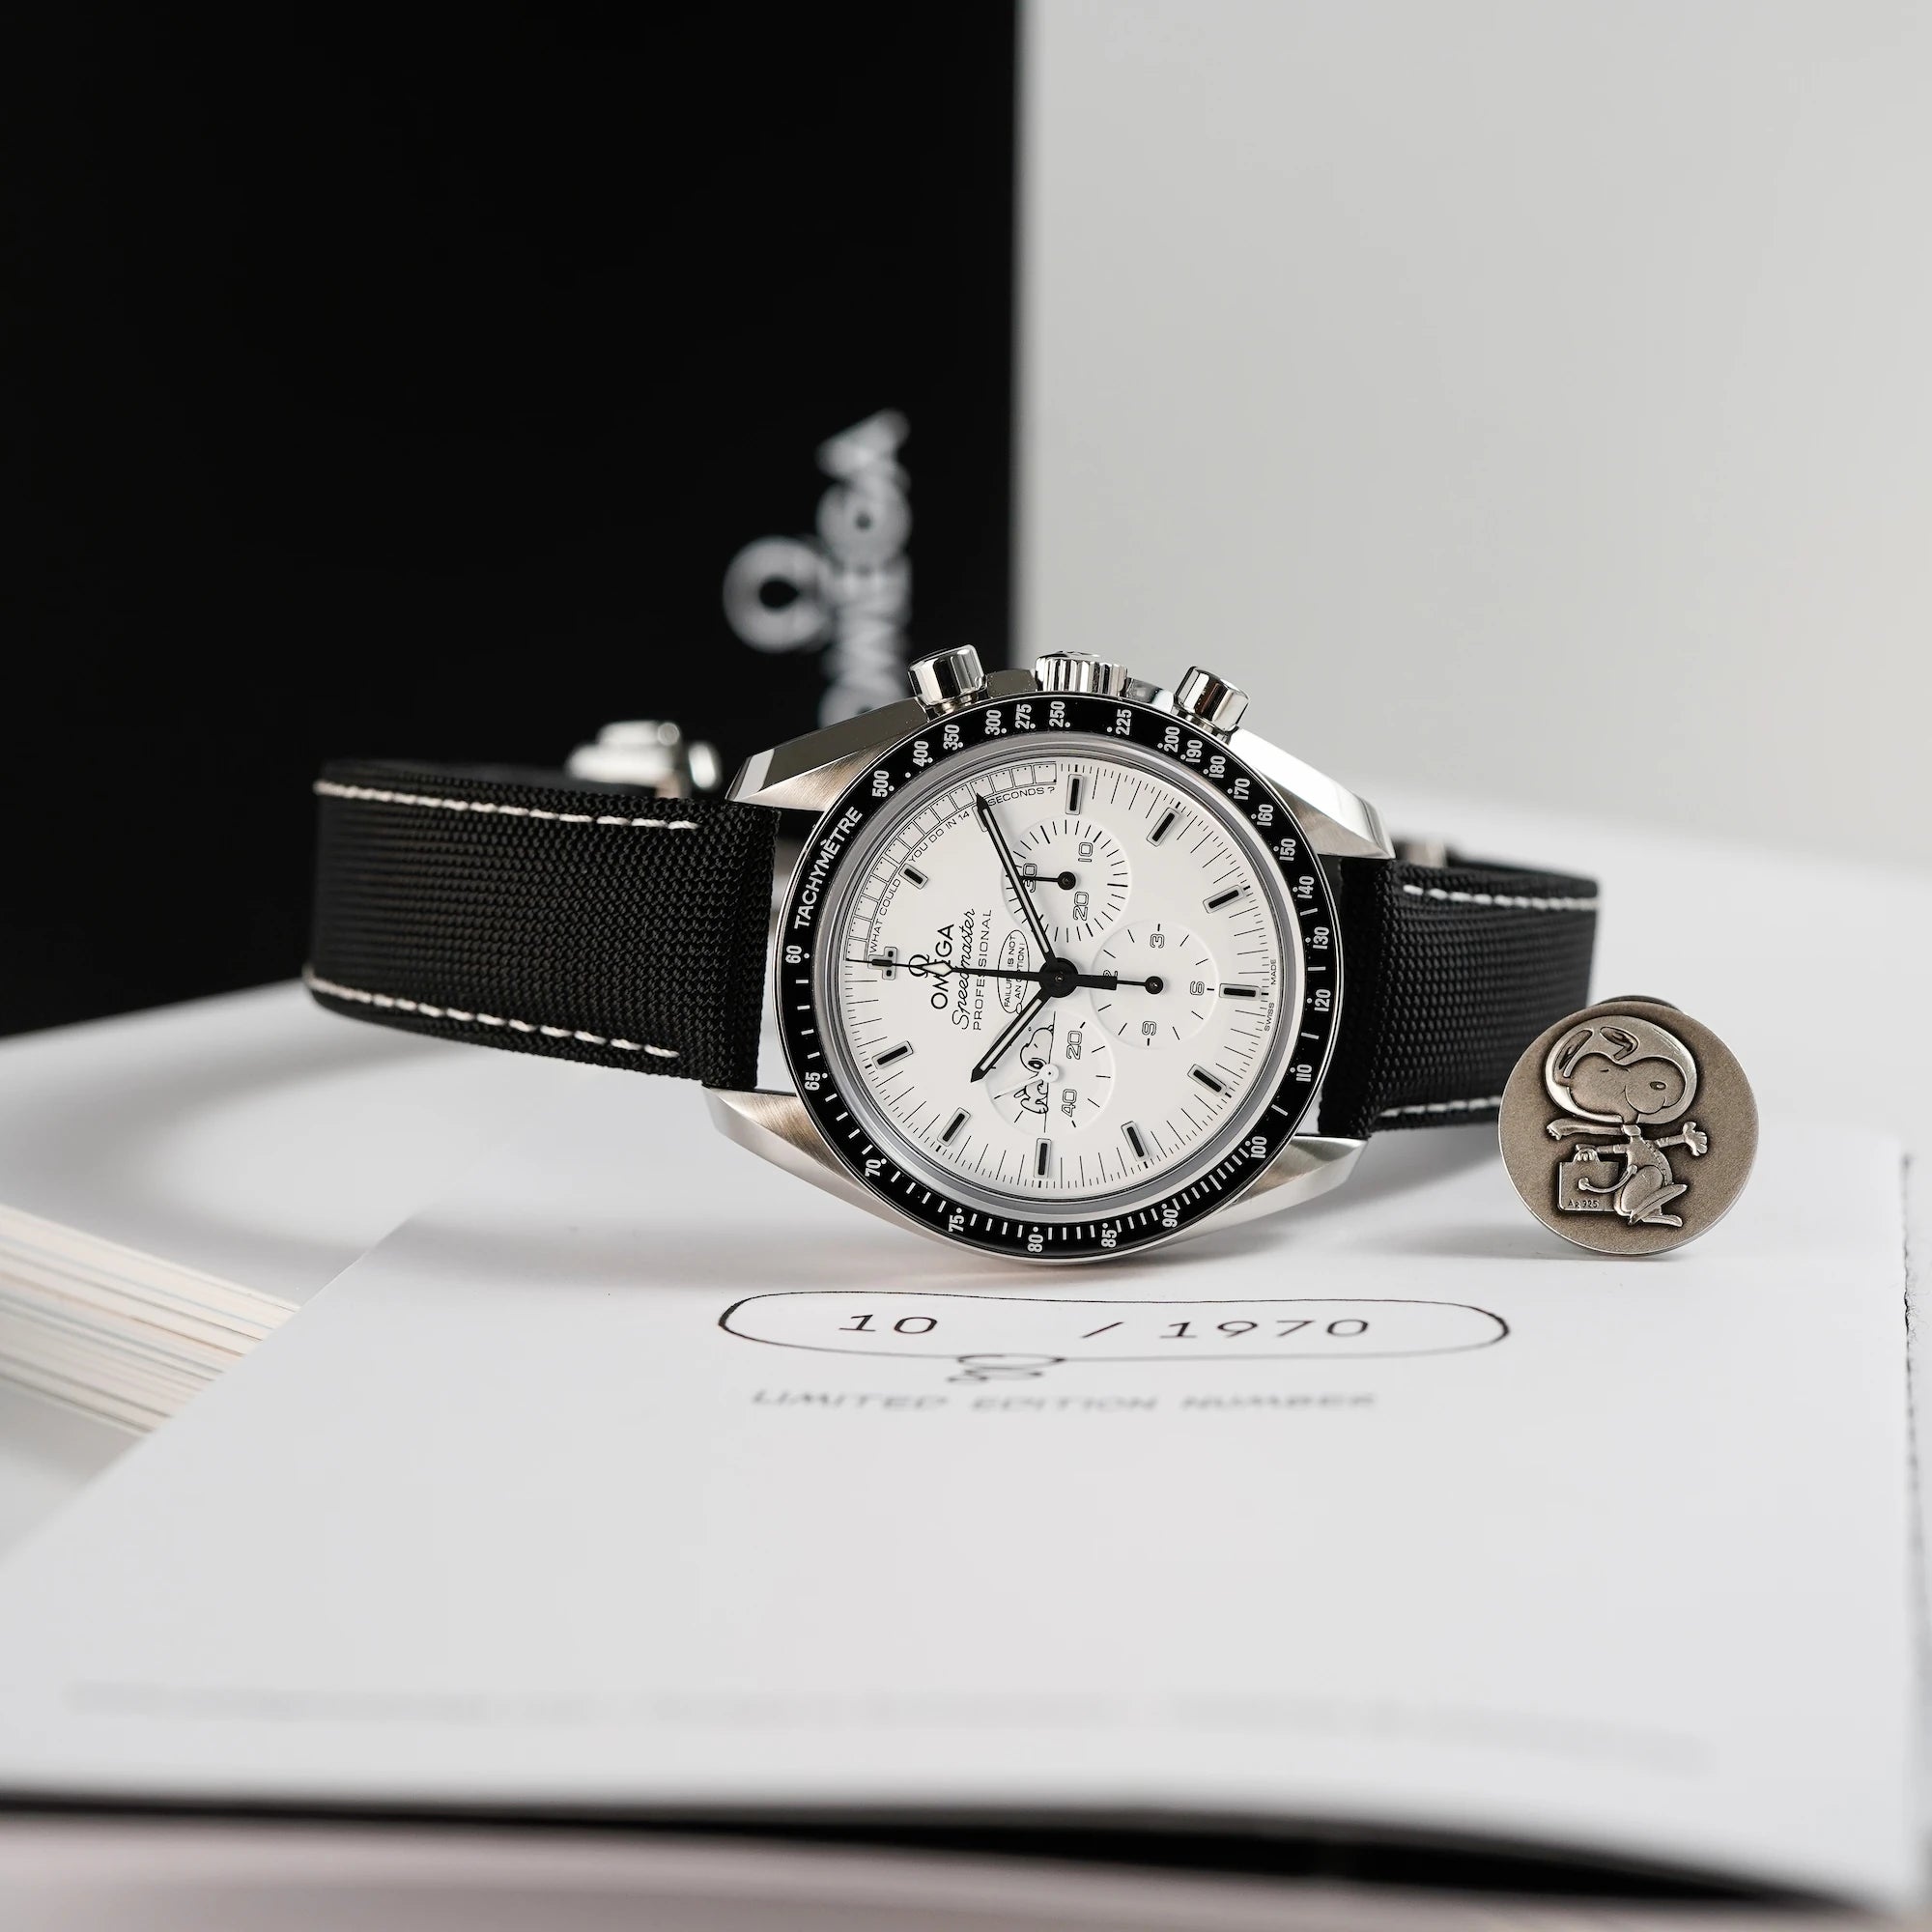 Produktfotografie der limitierten Omega Speedmaster Moonwatch Silver Snoopy mit dem weißen Zifferblatt zusammen mit dem Snoopy-Pin aus dem Lieferumfang